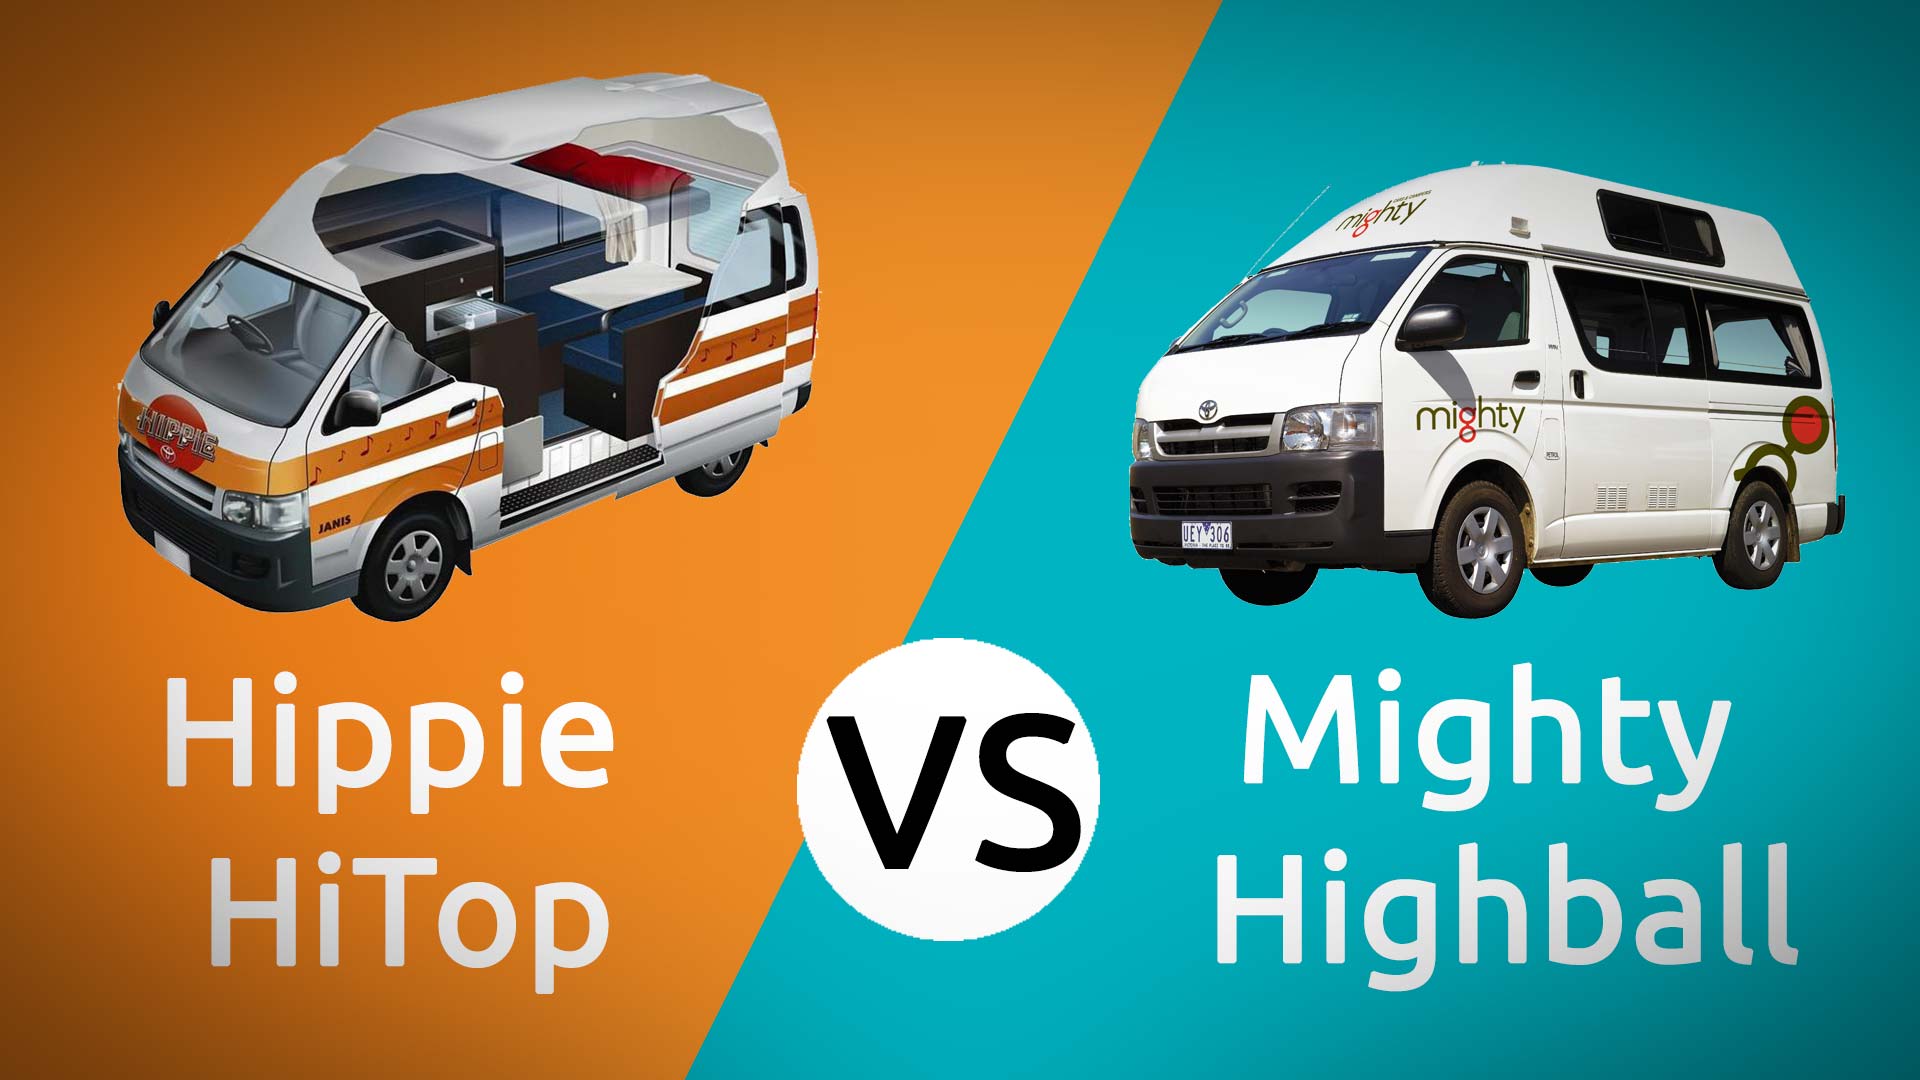 Hippie HiTop campervan vs Mighty Highball Campervan